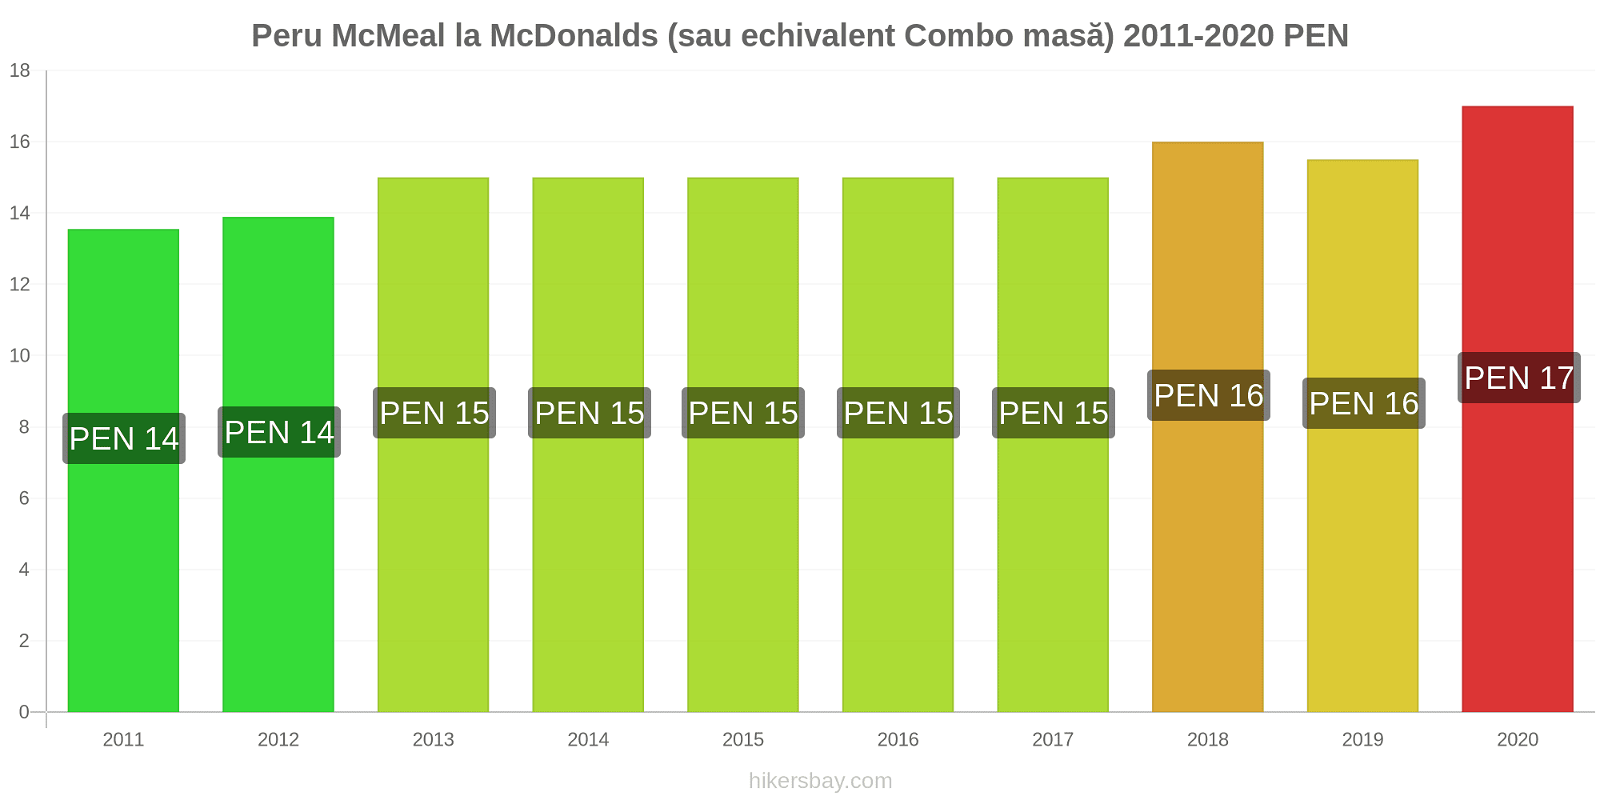 Peru modificări de preț McMeal la McDonalds (sau echivalent Combo masă) hikersbay.com